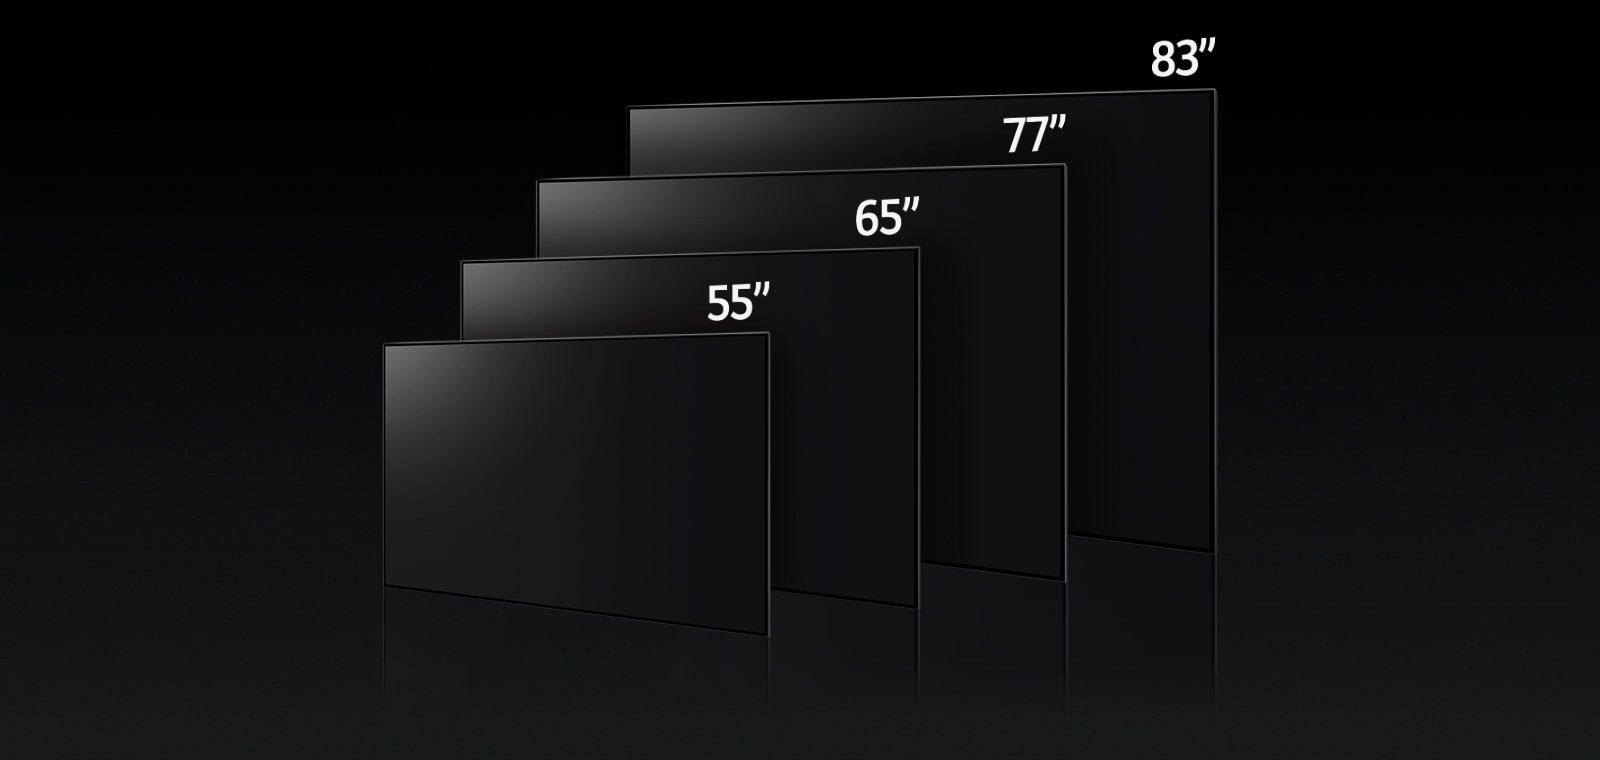 Een afbeelding die de verschillende formaten van de LG OLED G3 vergelijkt, met 55", 65", 77" en 83".